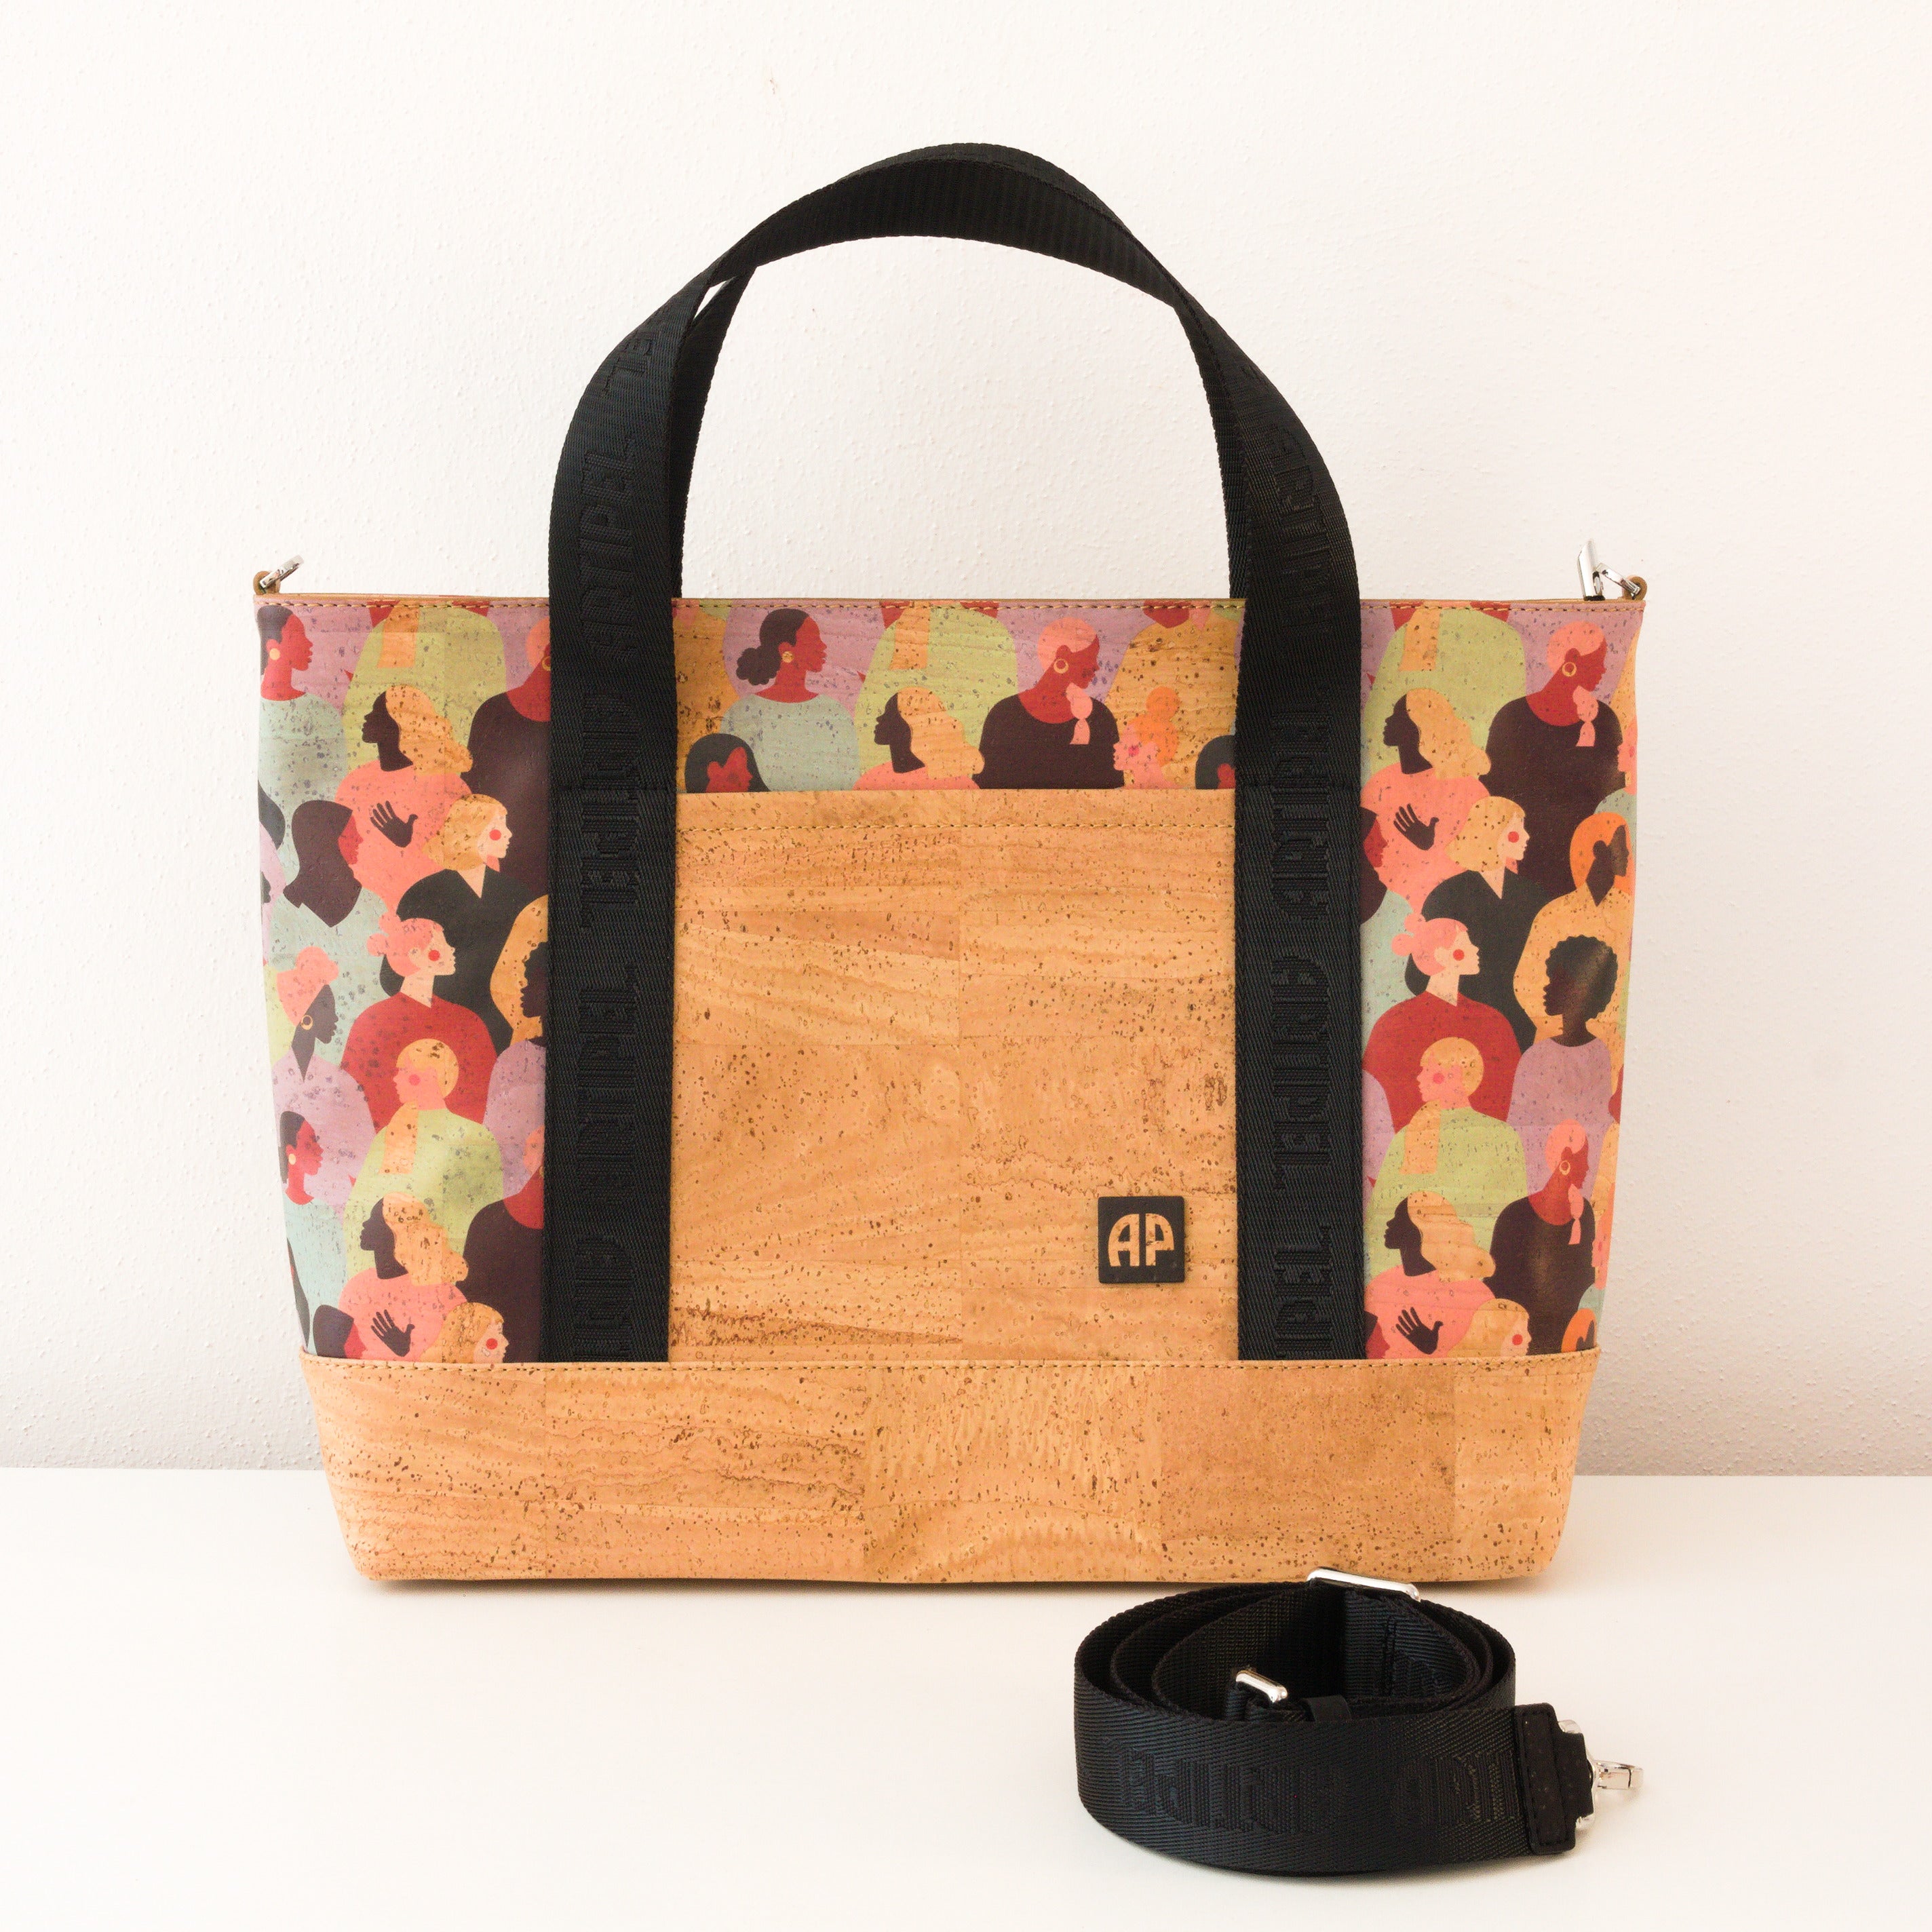 Kork Handtasche * in 2 Größen und 2 Designs * Vegan * Umhängetasche für Frauen * Crossbody * Shopper * handmade in Portugal